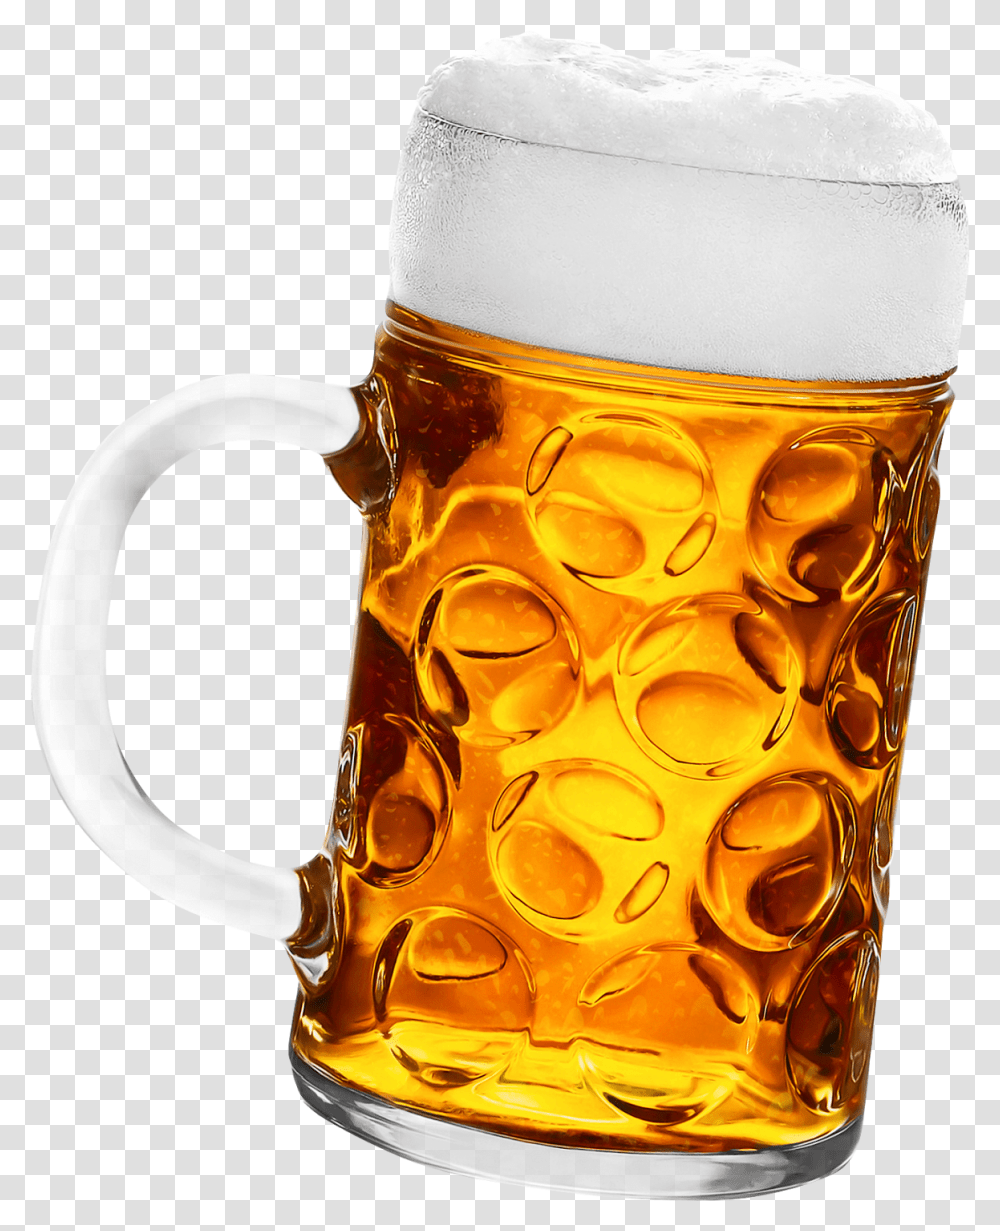 Glass Of Beer, Beer Glass, Alcohol, Beverage, Drink Transparent Png